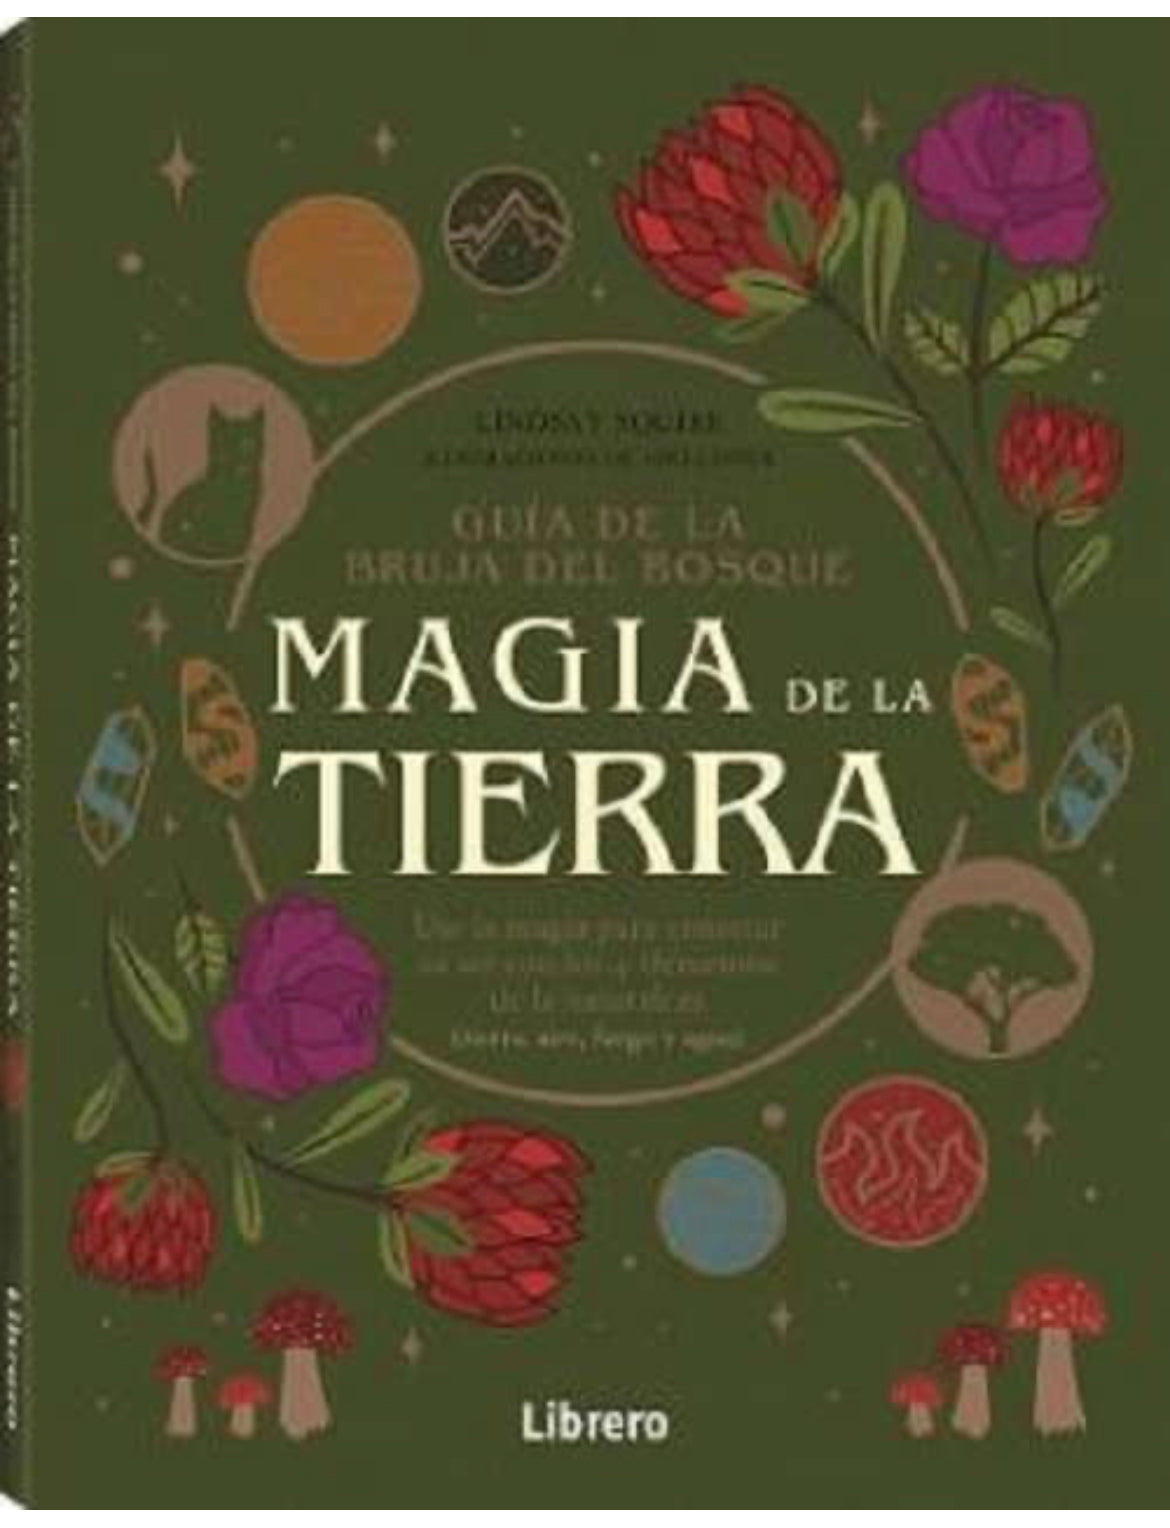 Guía de la bruja del bosque MAGIA DE LA TIERRA : Use la magia para conectar su ser con los 4 elementos de la naturaleza ( tierra, aire, fuego y agua)) - GreenWitchArt